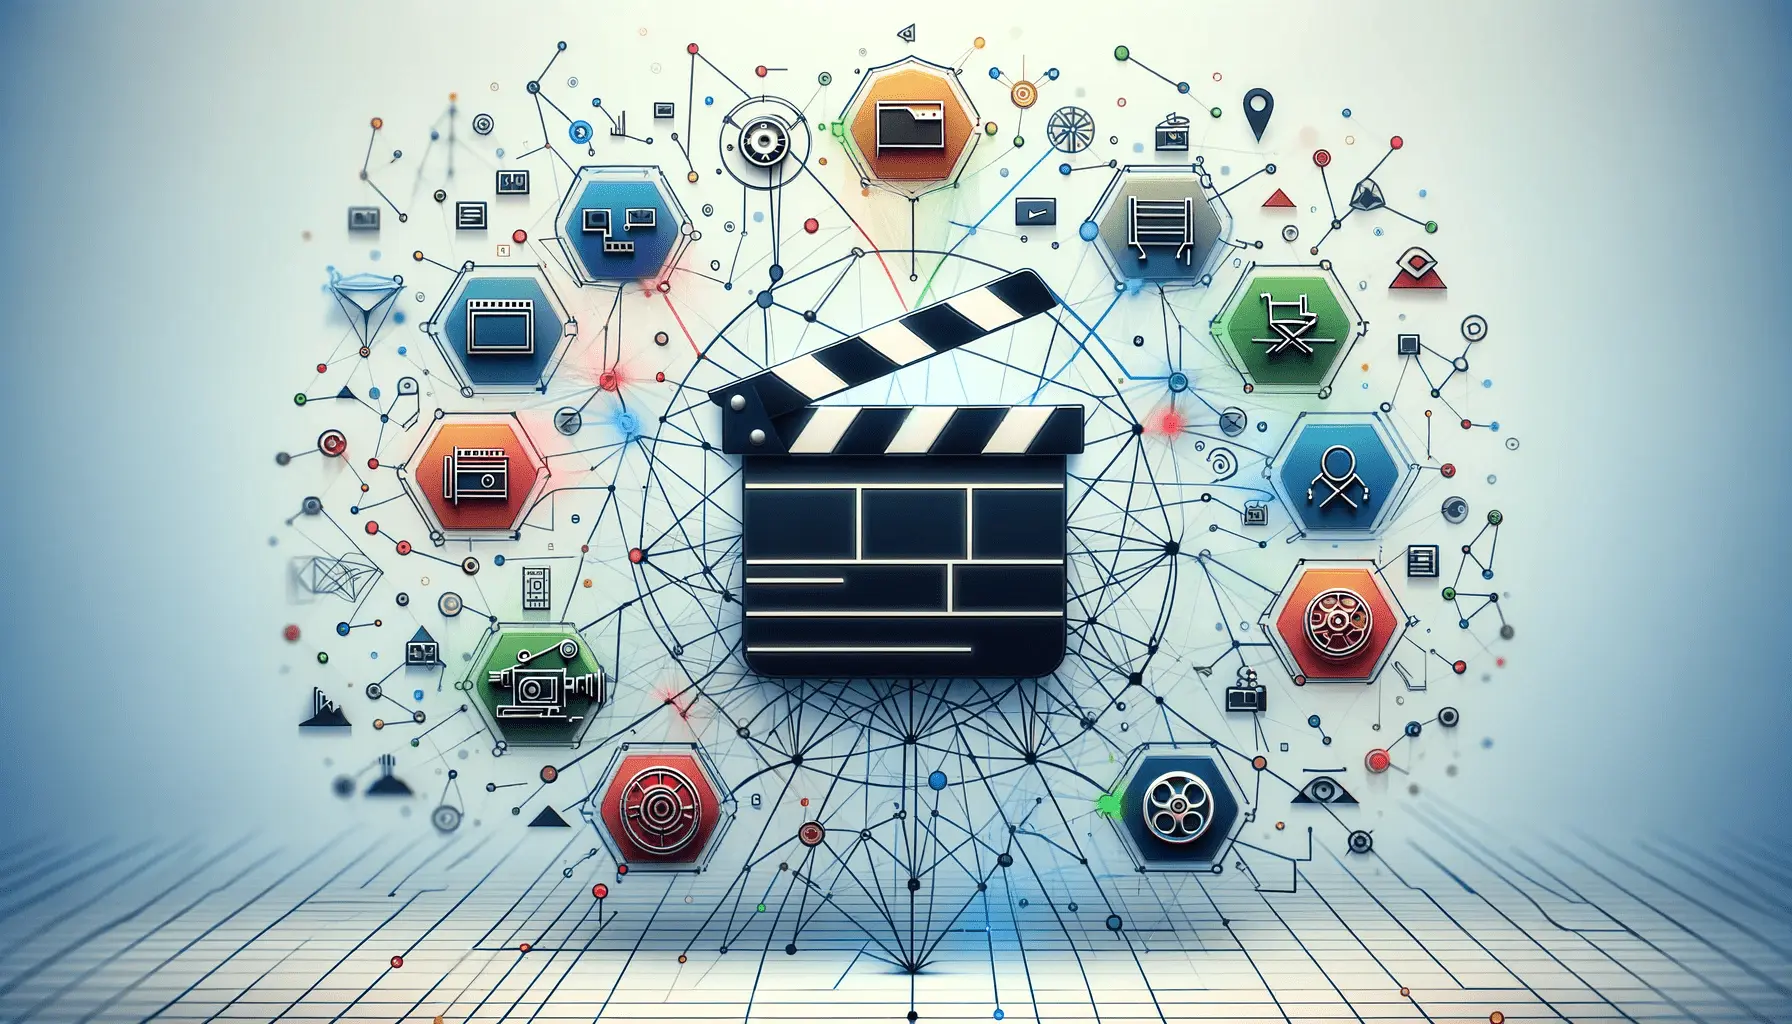 Movie Schema for Film Industry